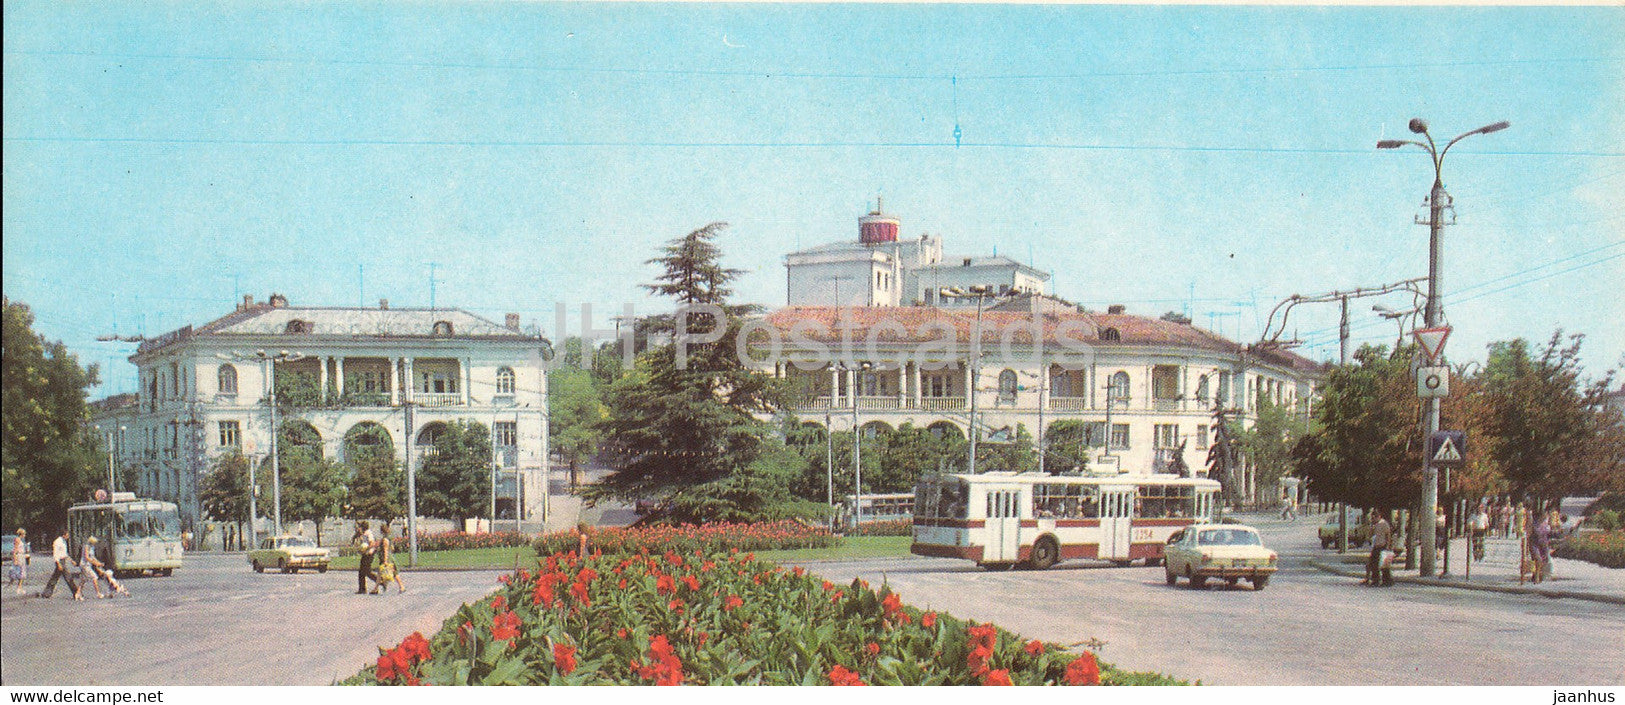 Sevastopol - Ushakov square - trolleybus - car Volga - bus - Crimea - 1983 - Ukraine USSR - unused - JH Postcards